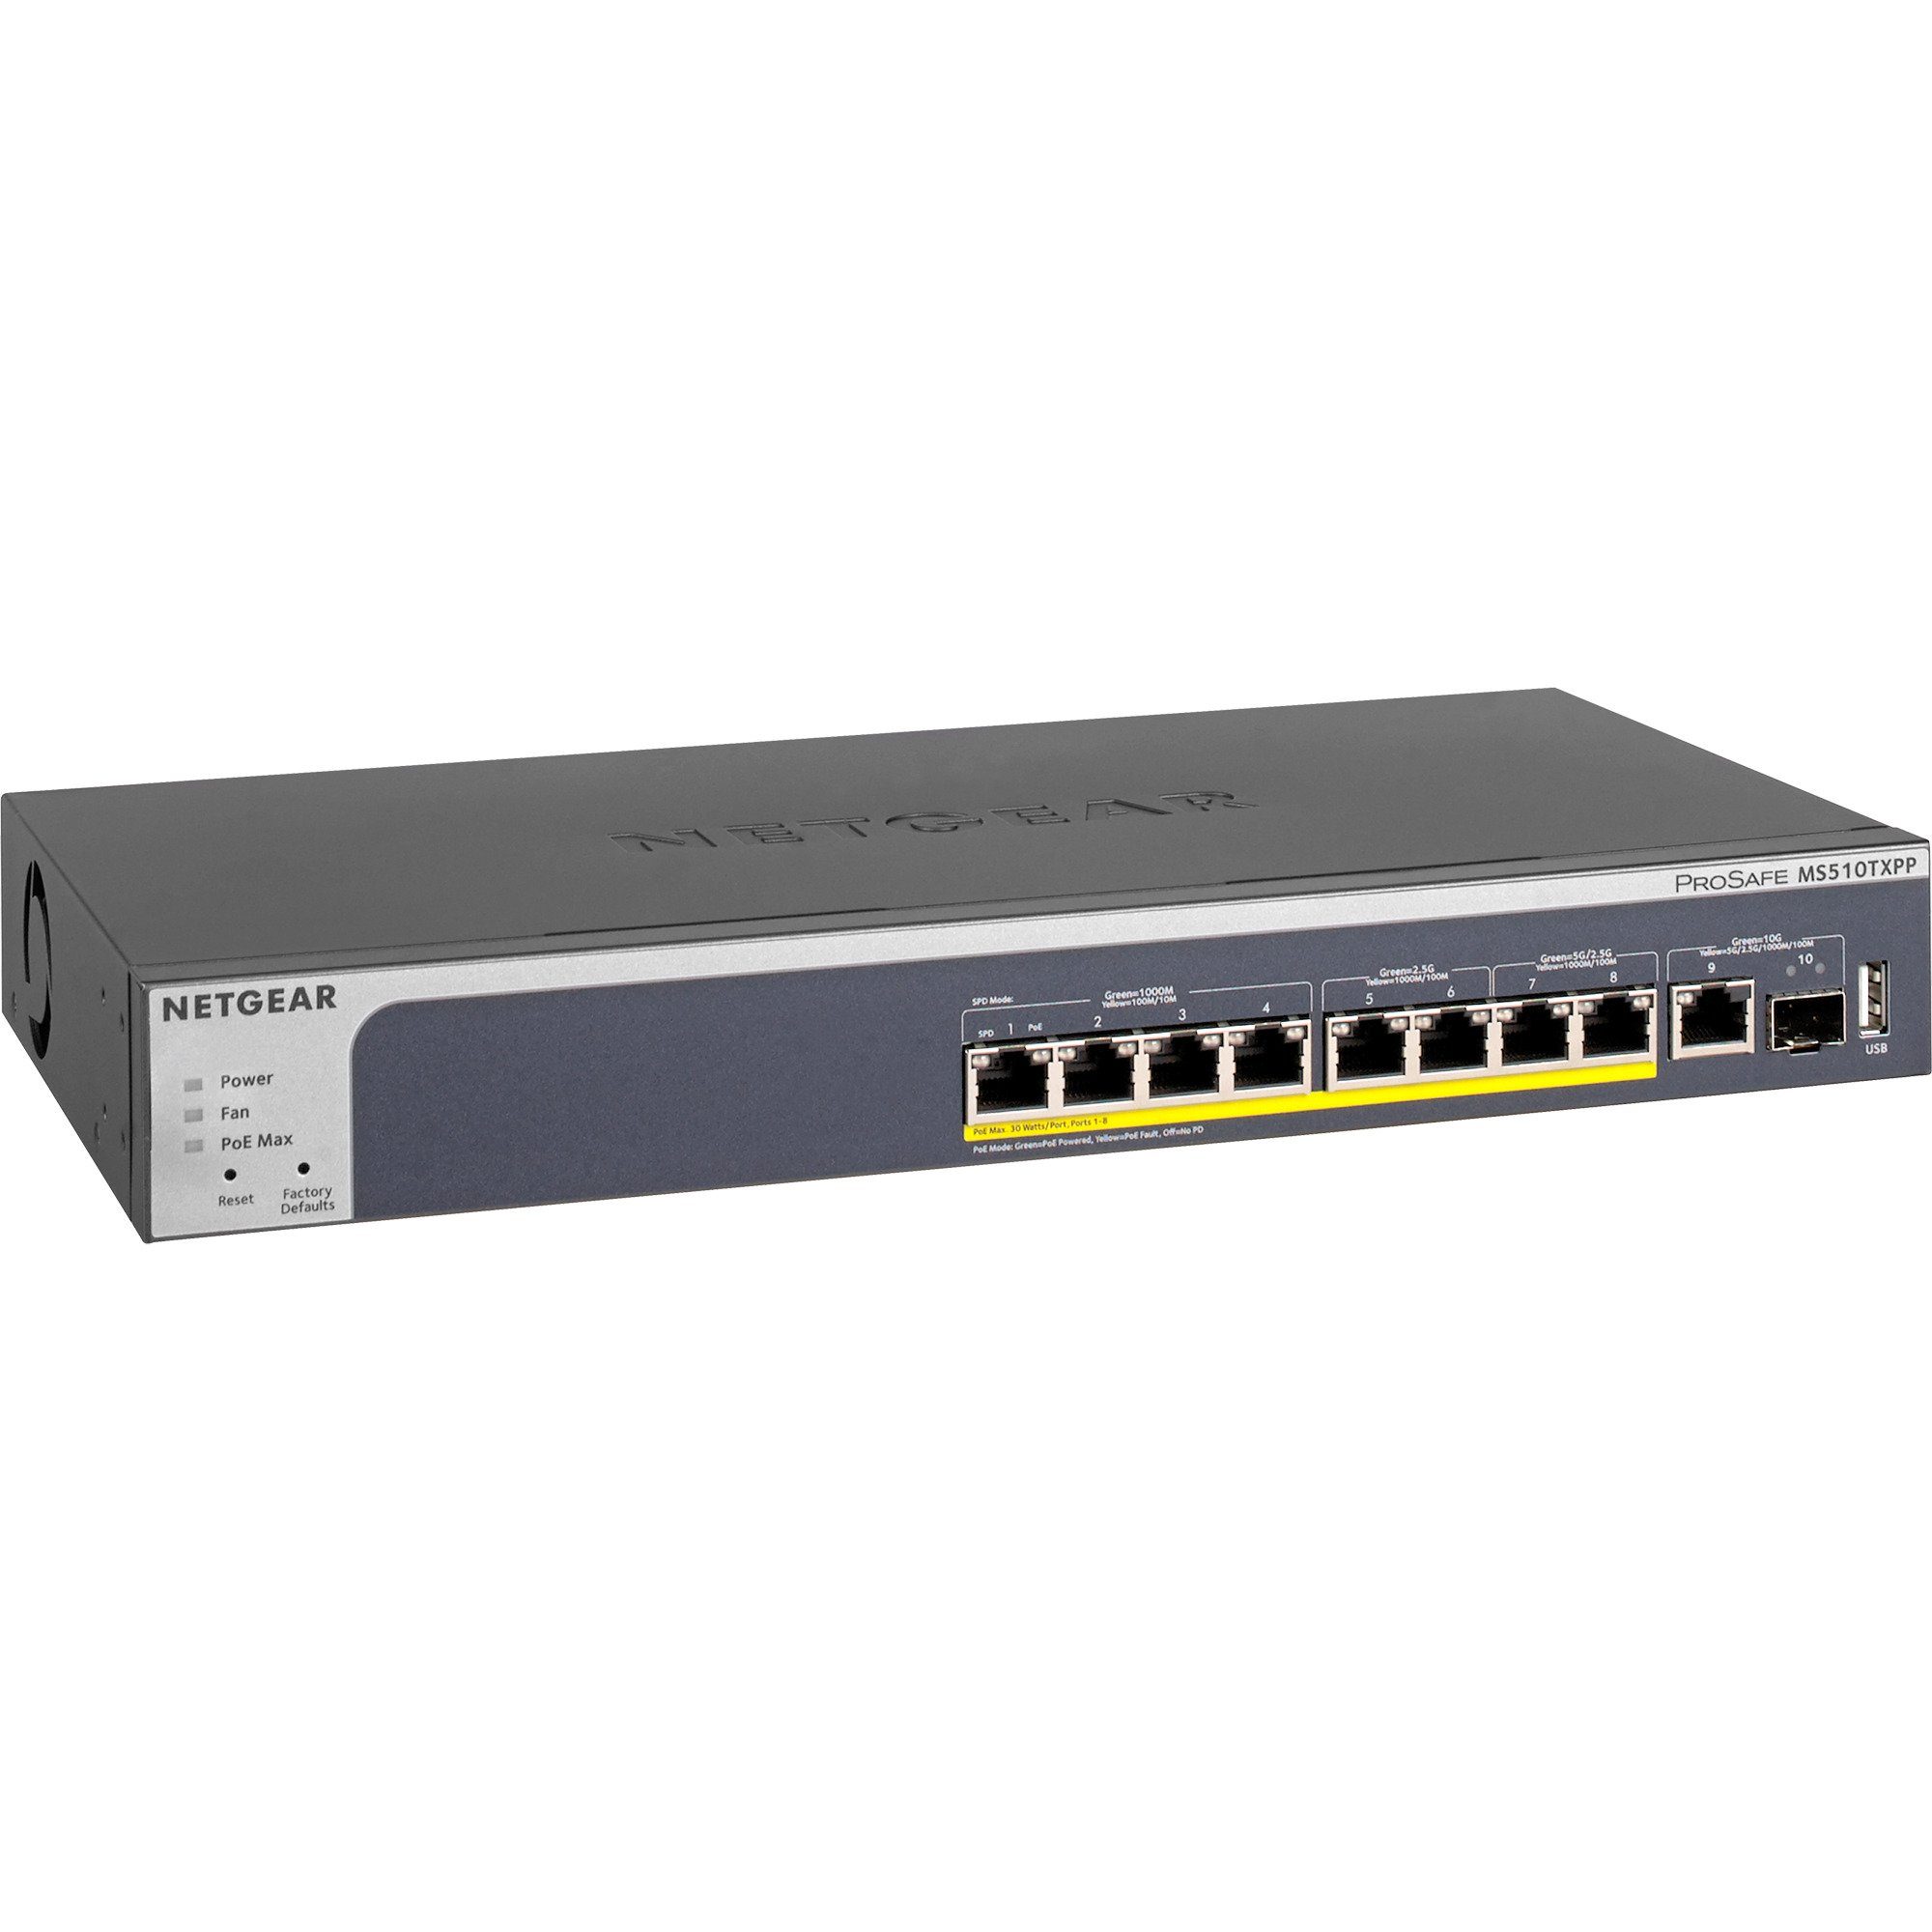 Netzwerk-Switch NETGEAR SFP+, Netgear (Multi-Gigabit, Switch, MS510TXPP,